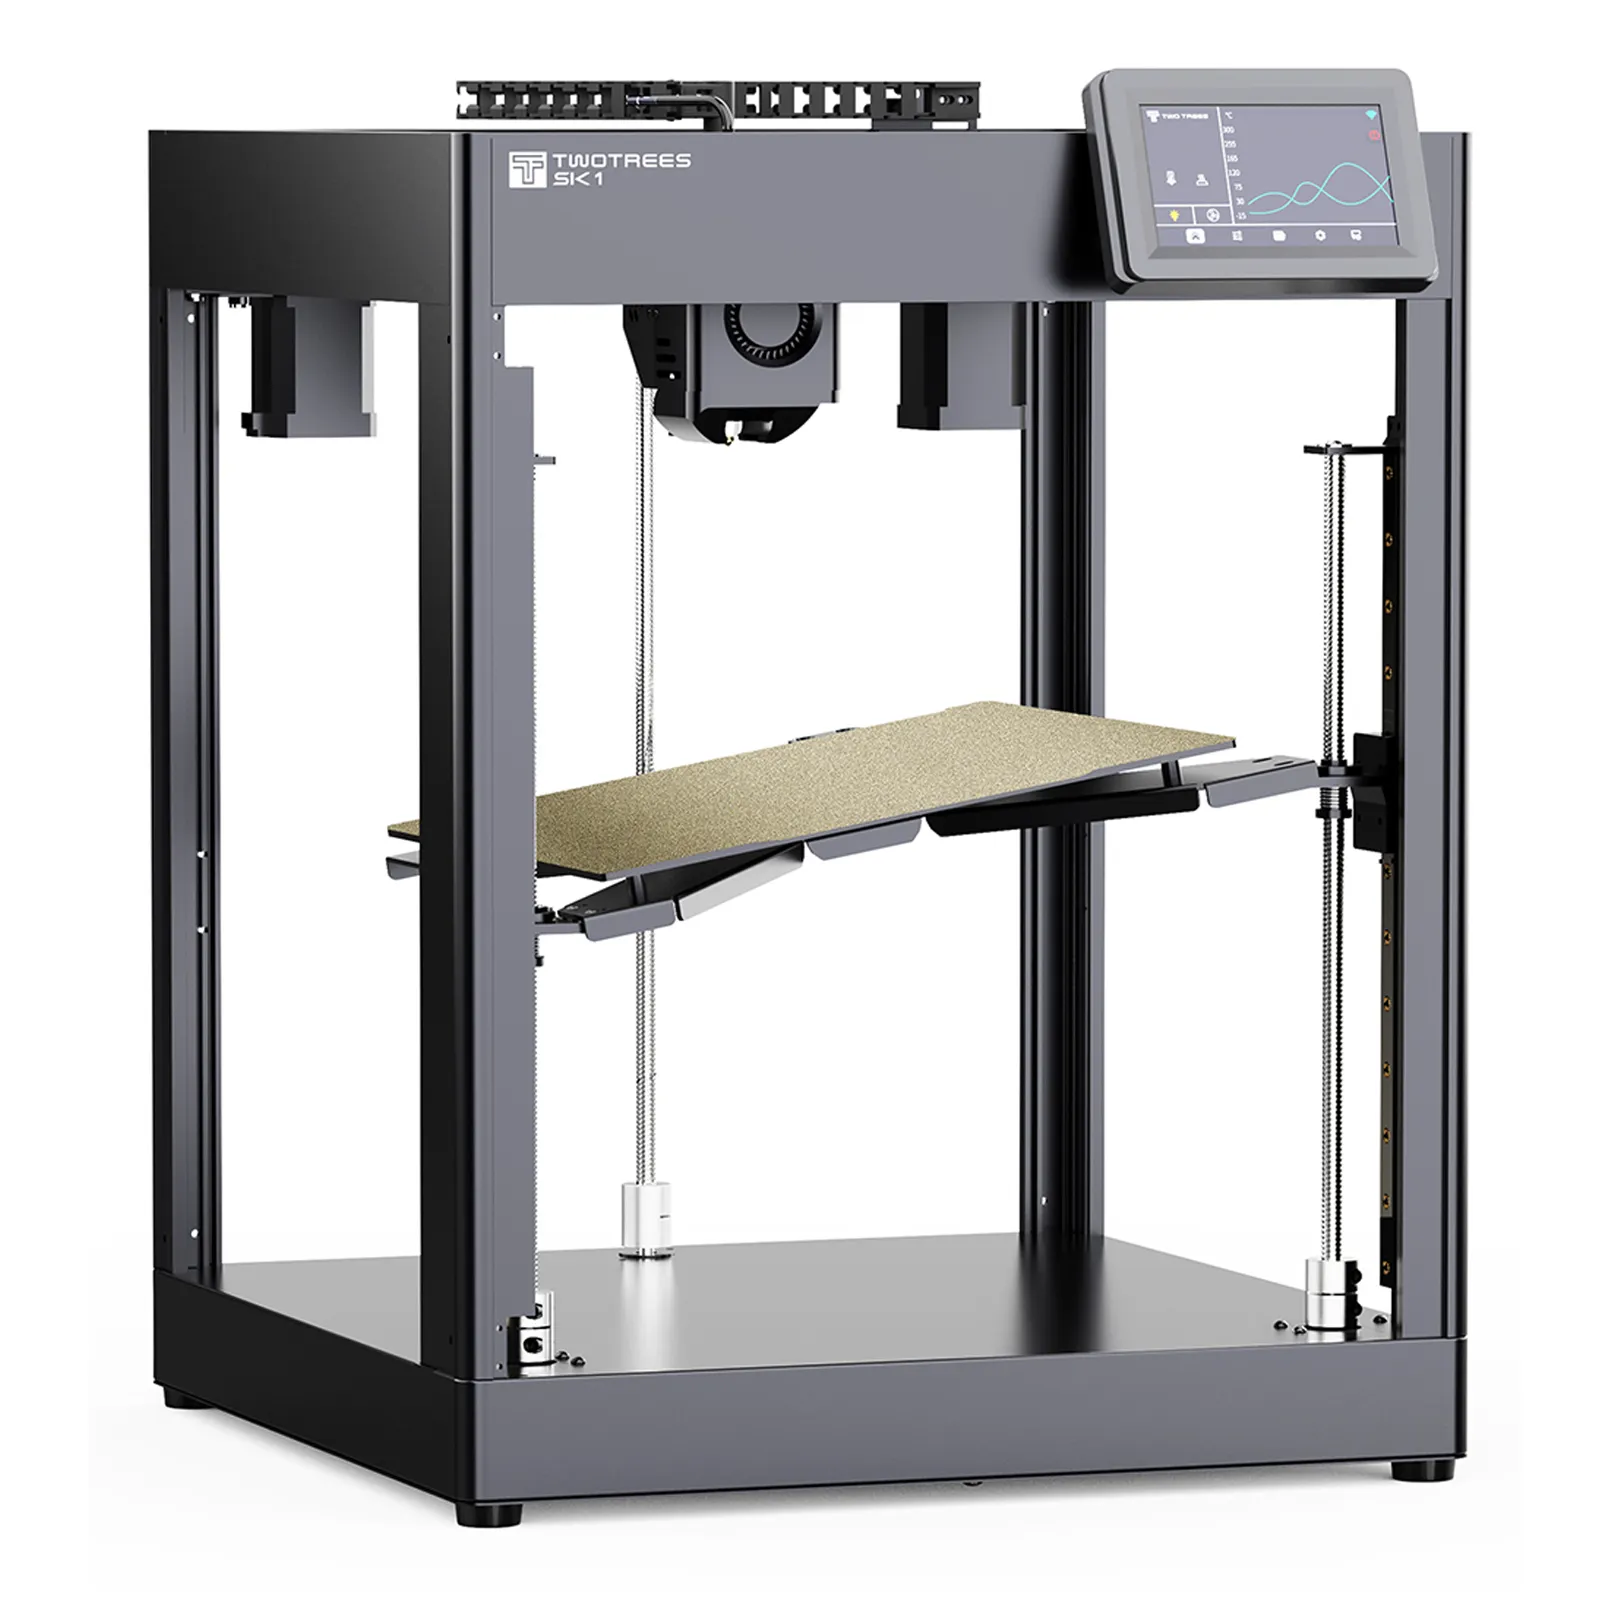 TWOTREES SK1 700mm/S lipat otomatis meratakan Industri 3D mesin Printer harga logam 3D Impresora untuk Printer 3D